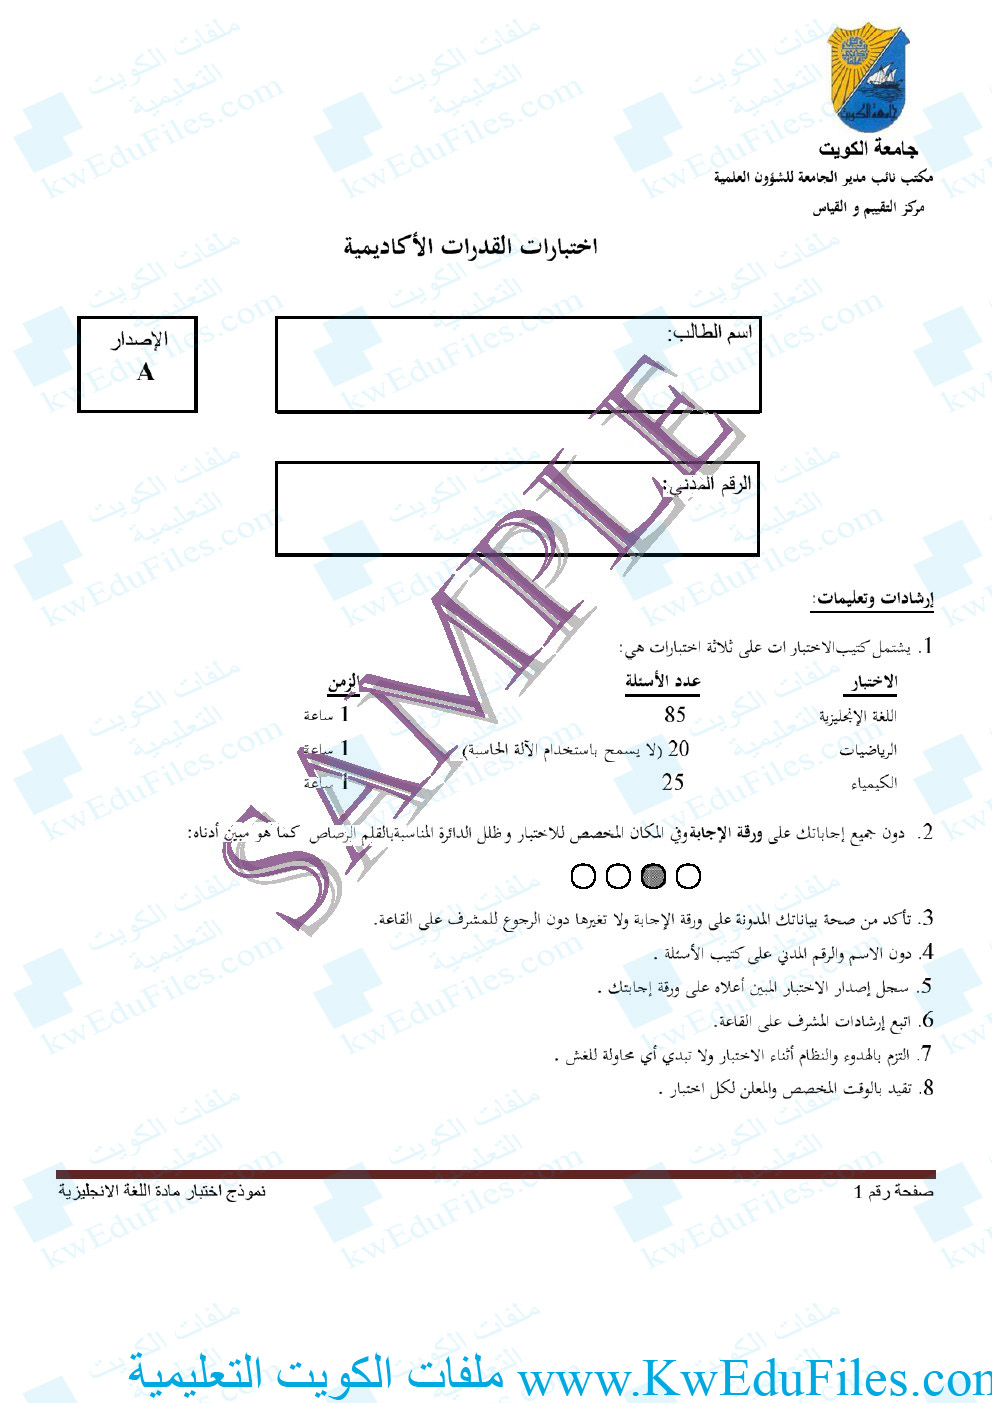 نموذج اختبارات القدرات الأكاديمية الاصدار A اضافي ملفات جامعية لغة انكليزية الفصل الثاني ملفات الكويت التعليمية